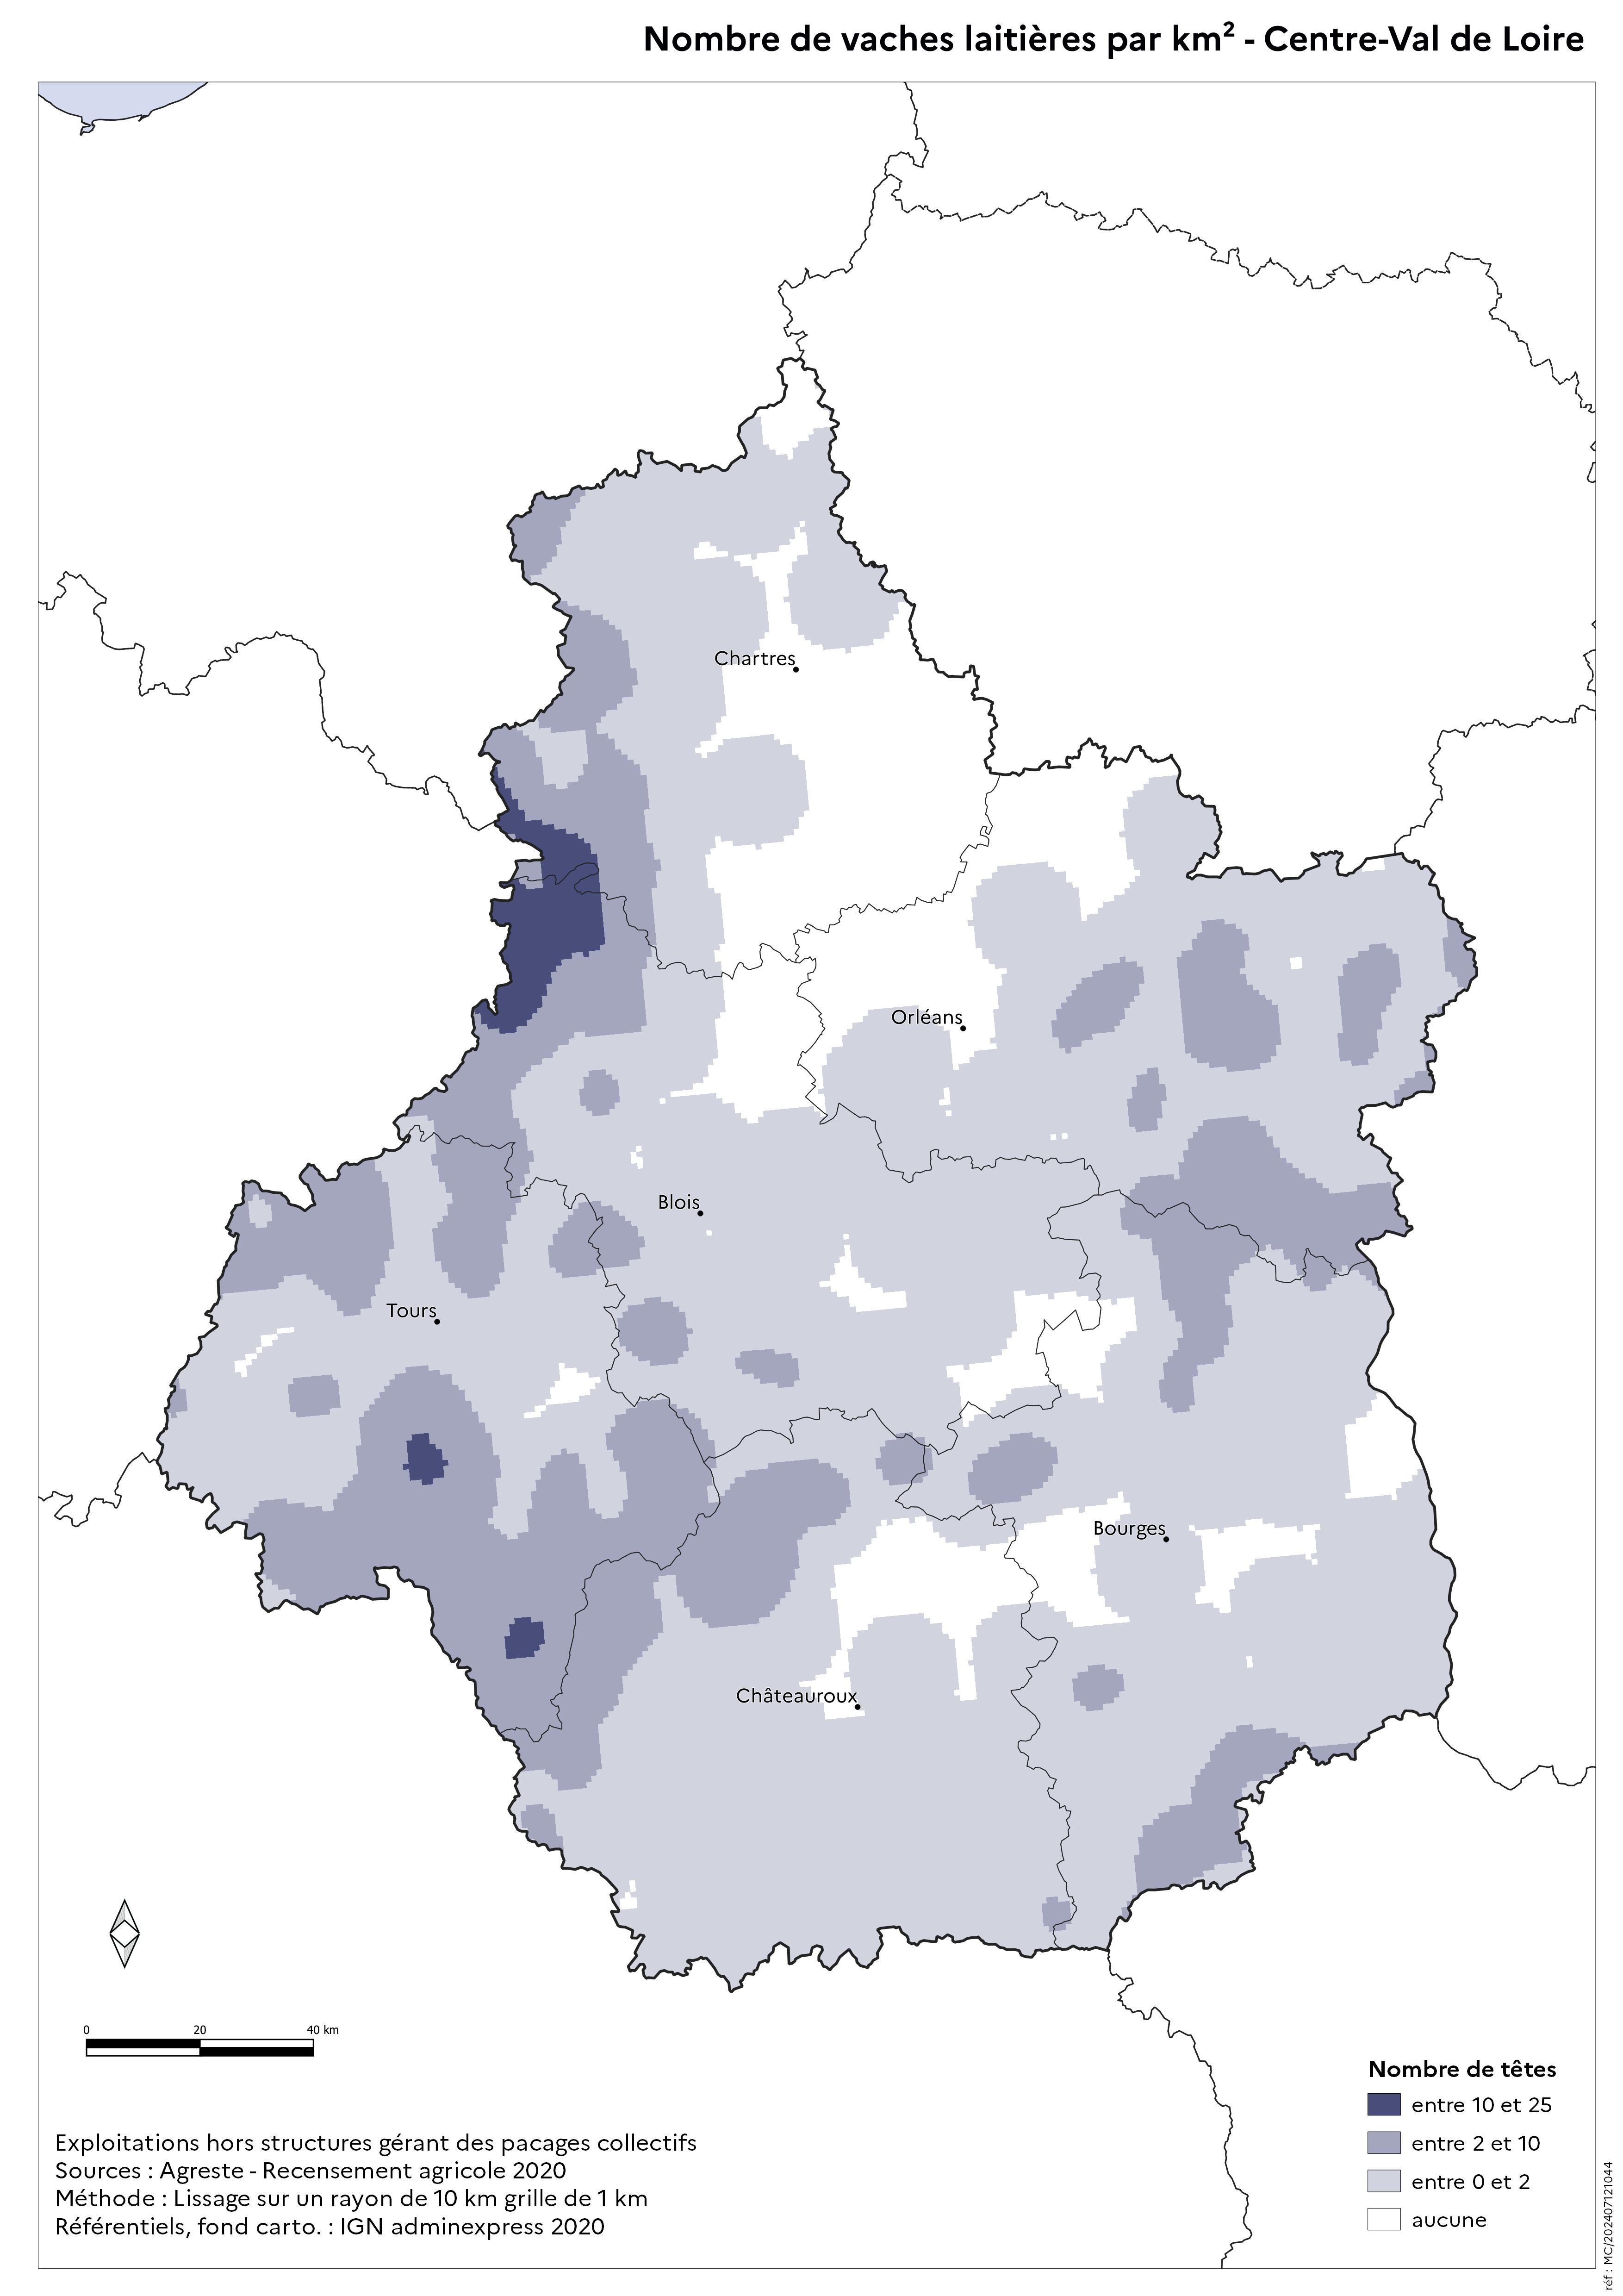 Image 7 : Nombre de vaches laitières par km² - Centre-Val de Loire